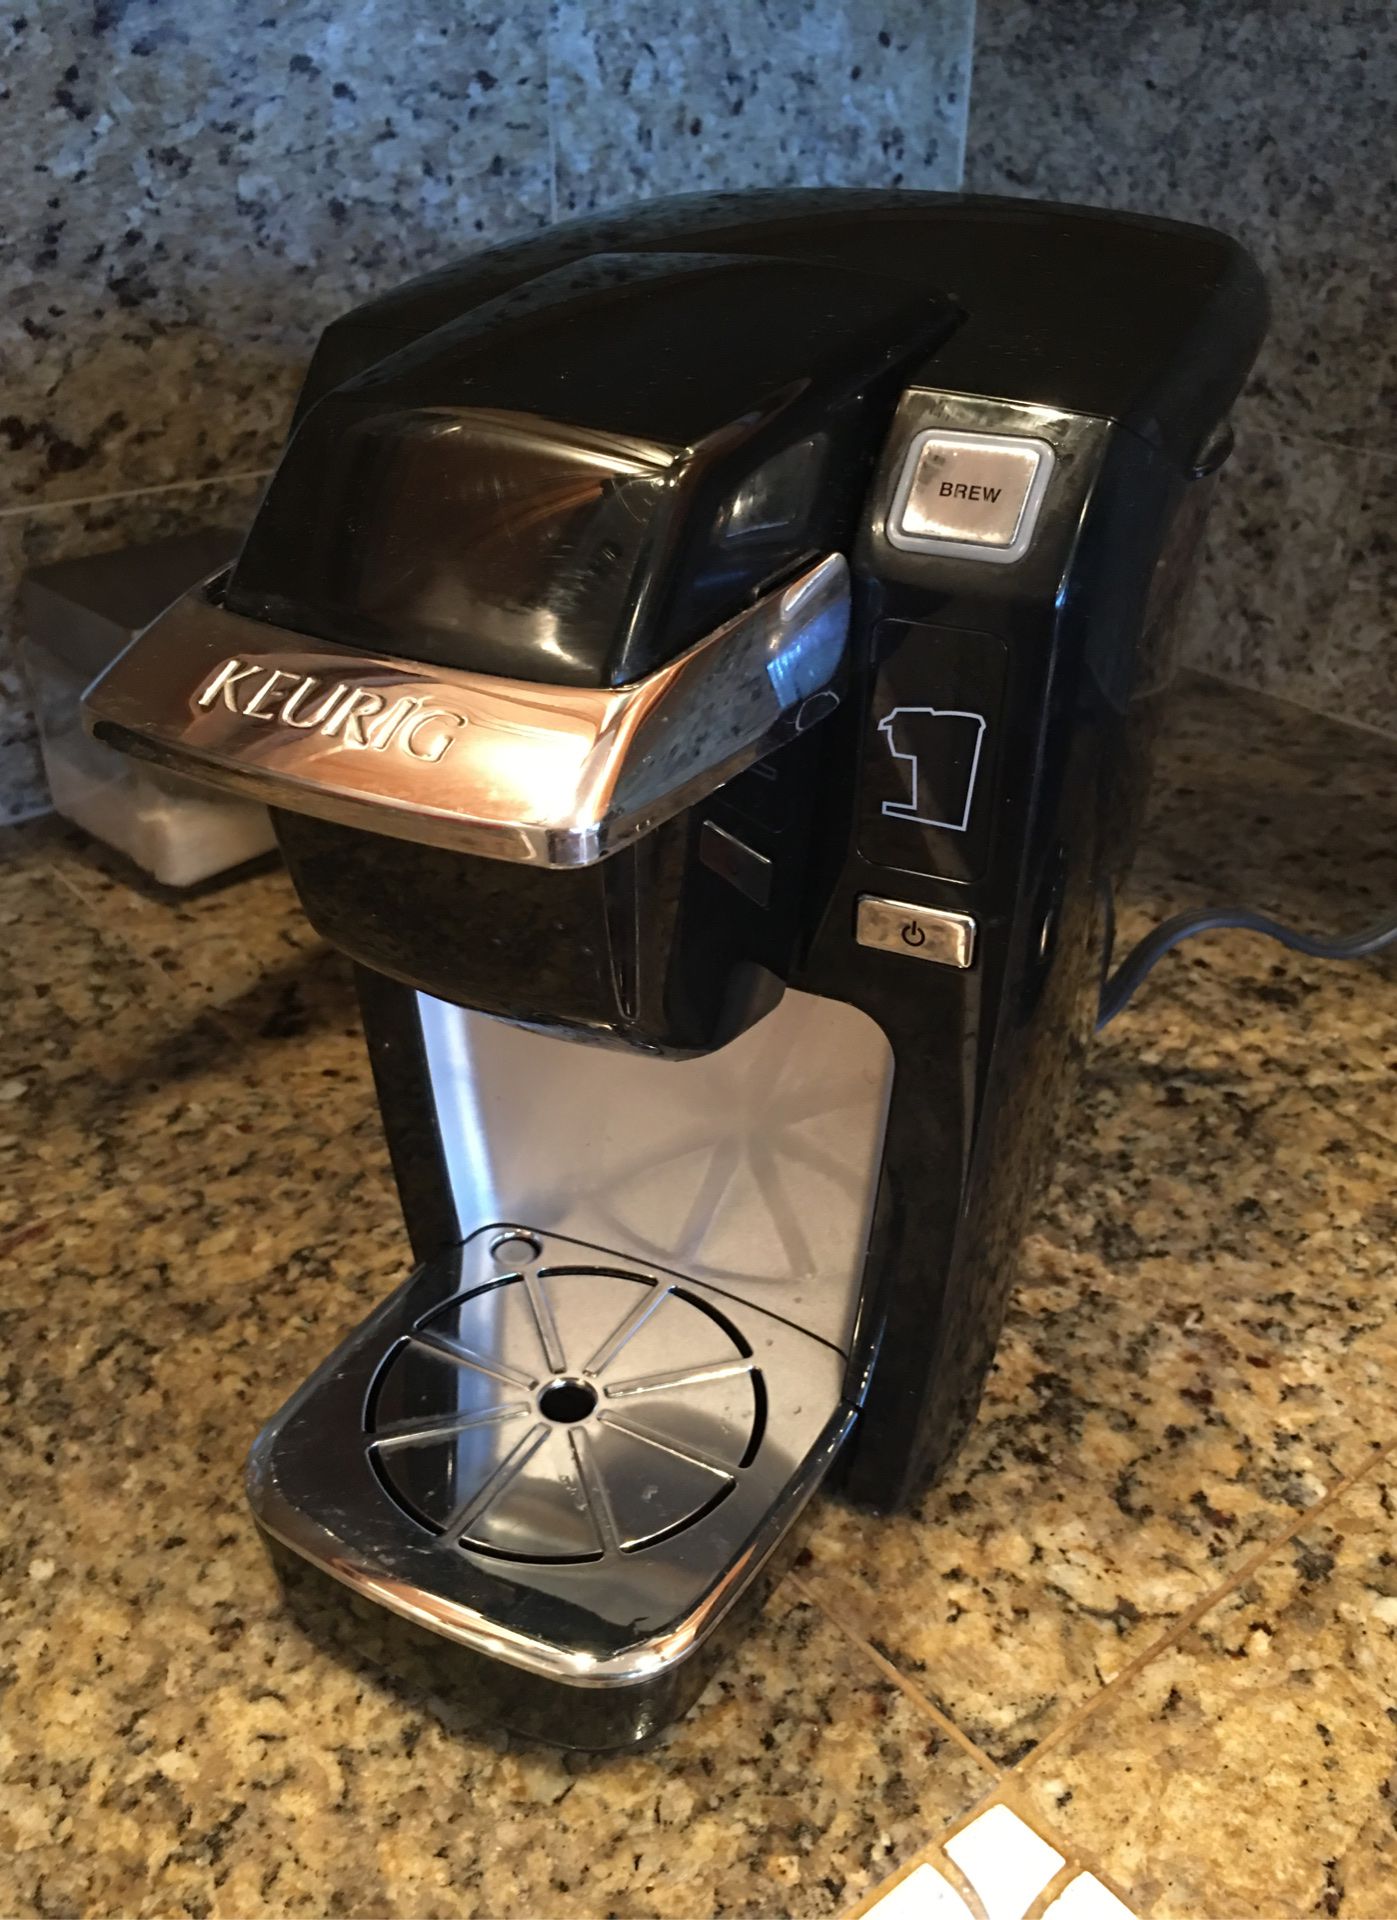 Keurig coffee maker. WORKS! $15!